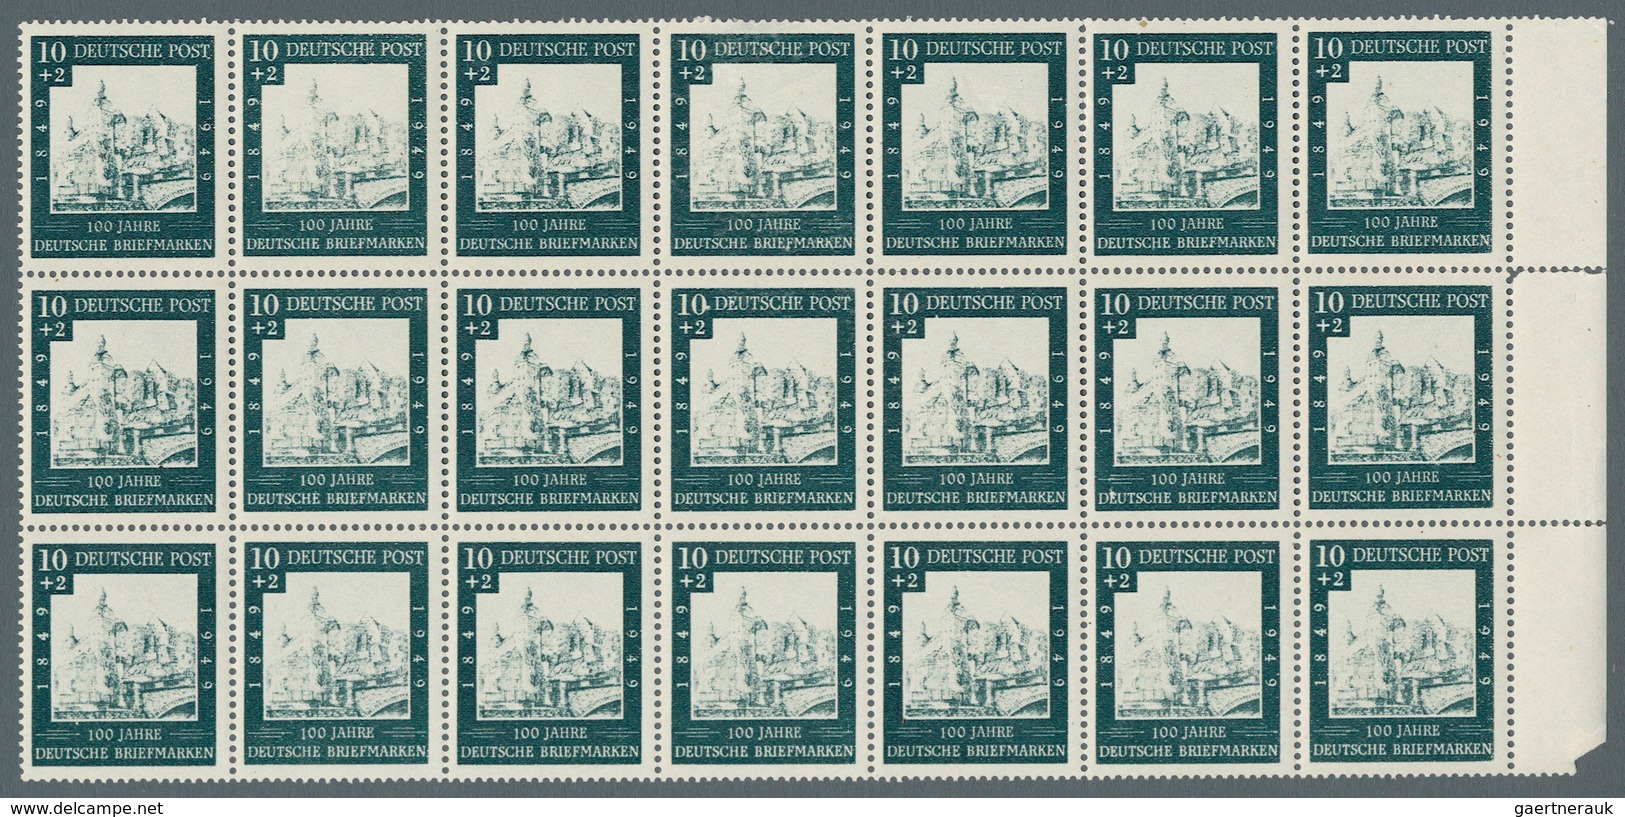 Bundesrepublik Deutschland: Ab 1949 Schachtel mit Abarten und Fehldrucken,etc., dabei z.B. Bund 113